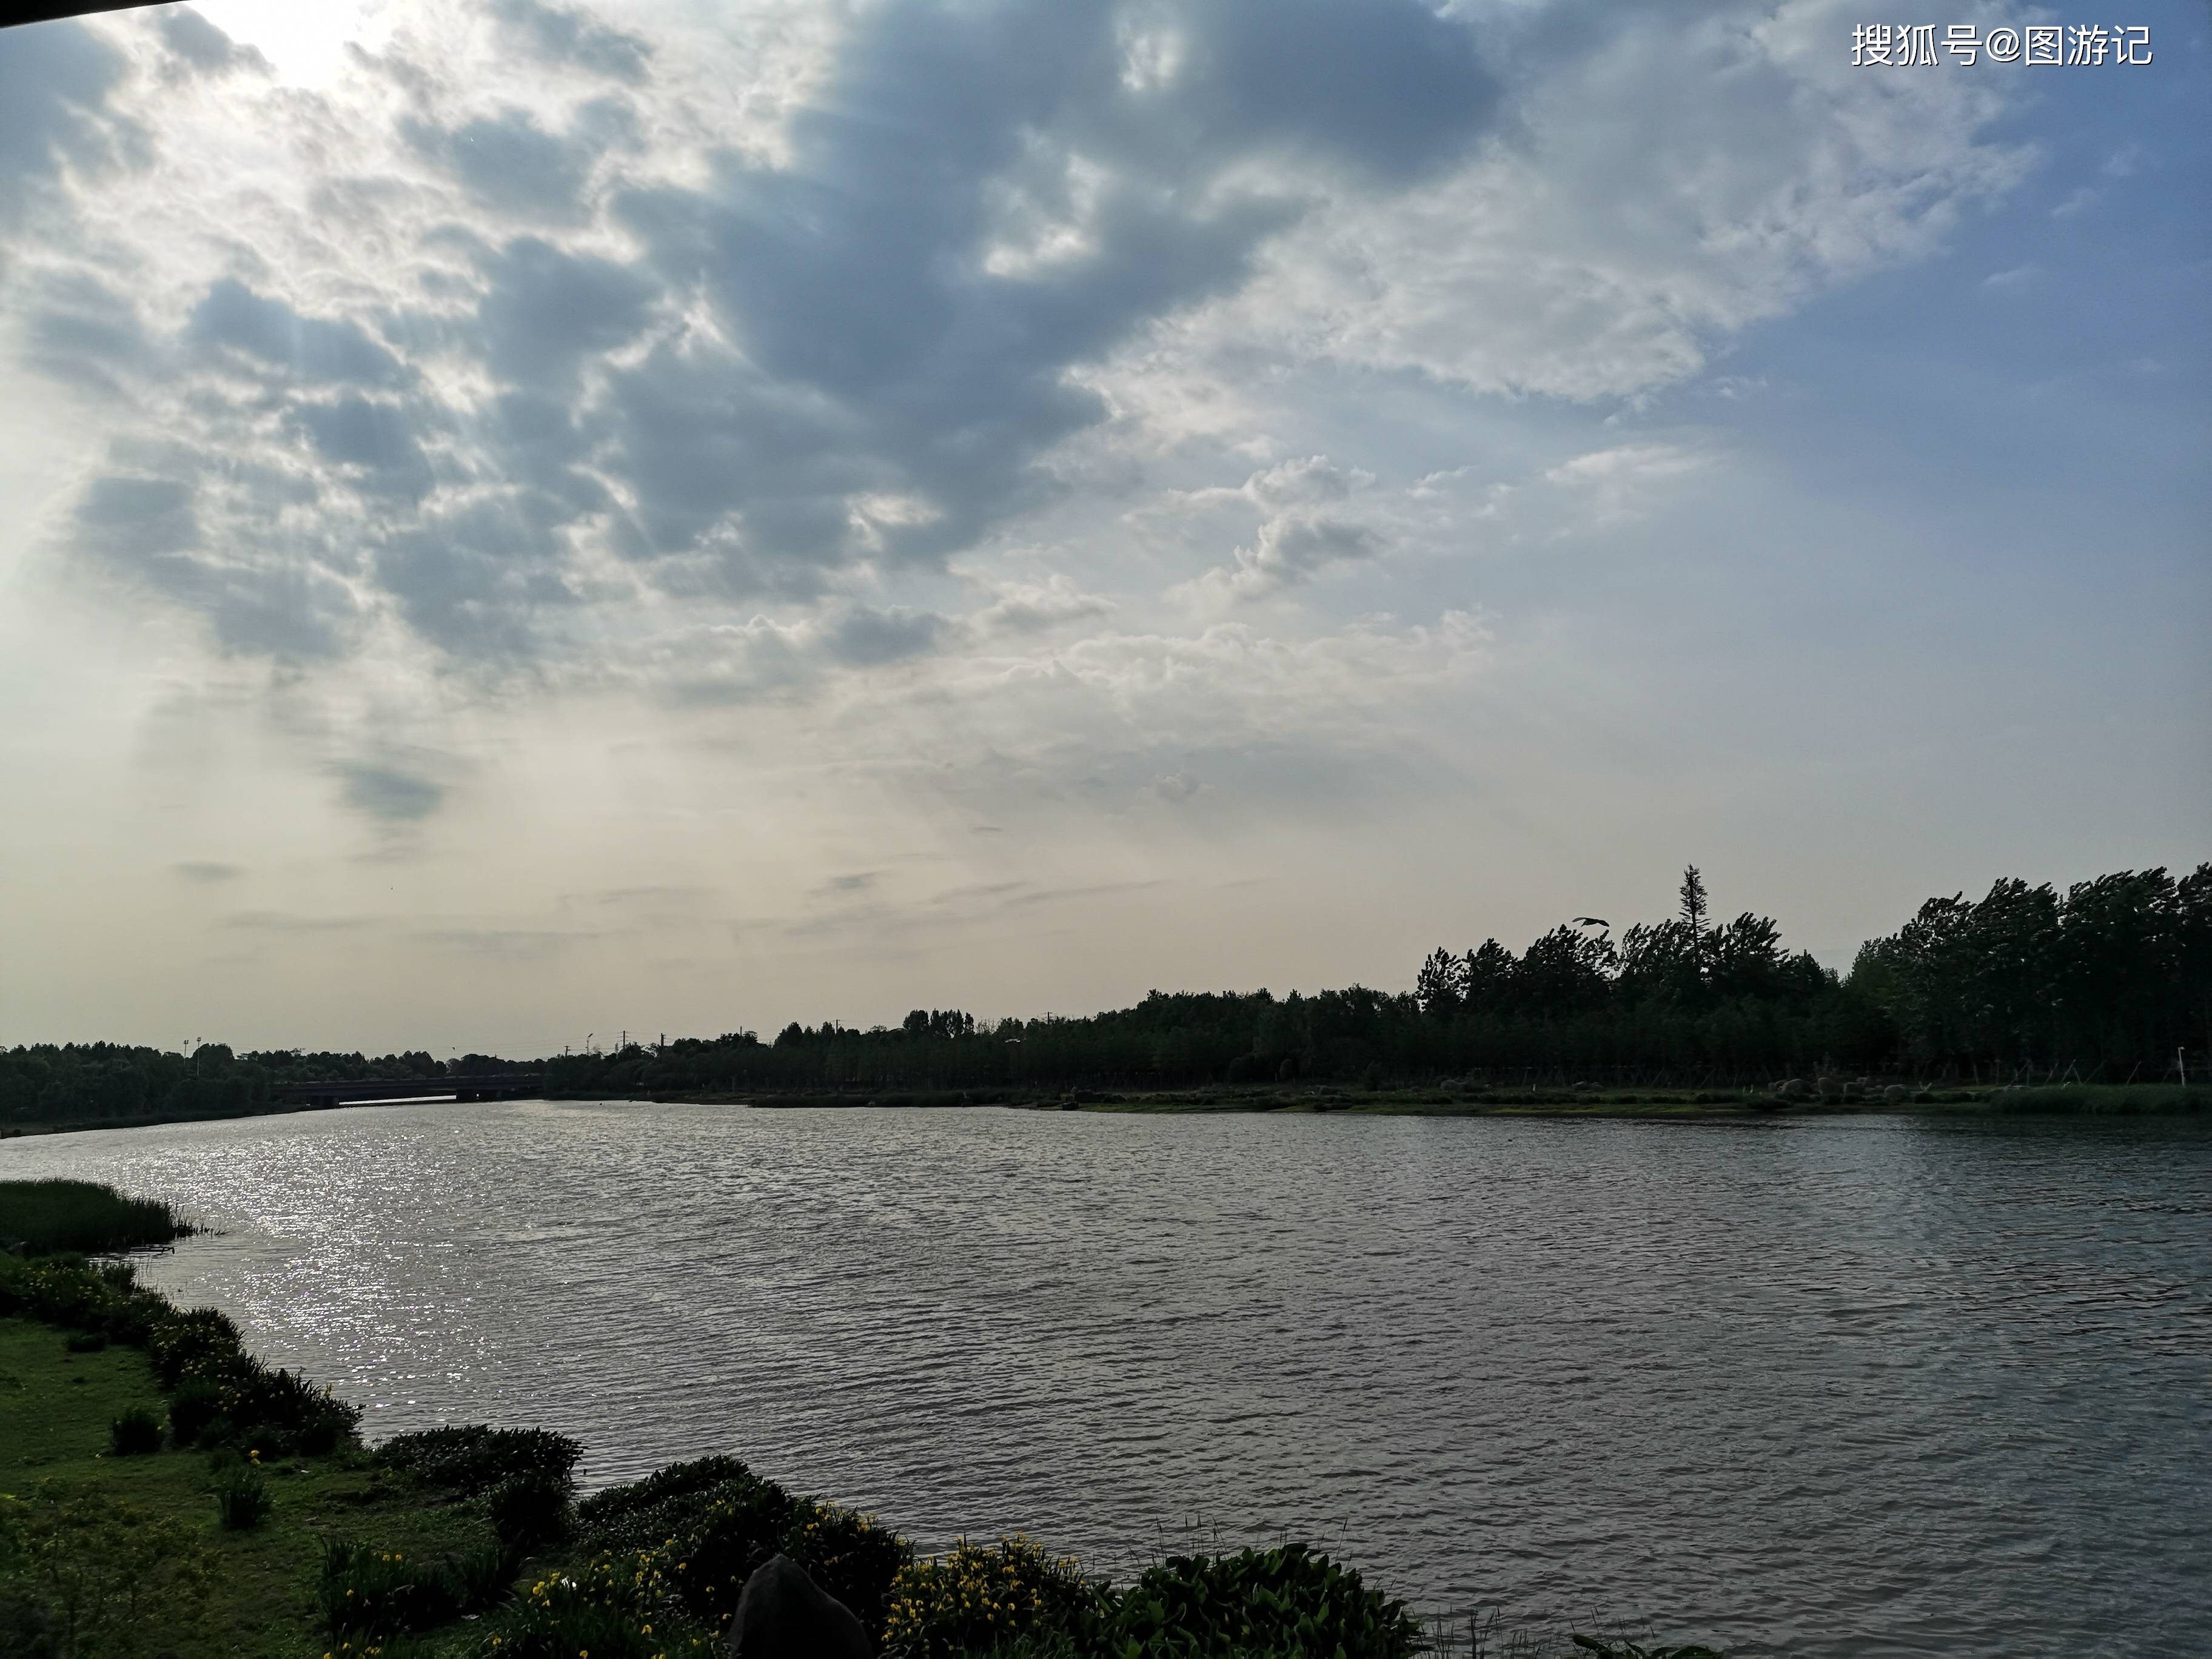 合肥滨湖风景图片